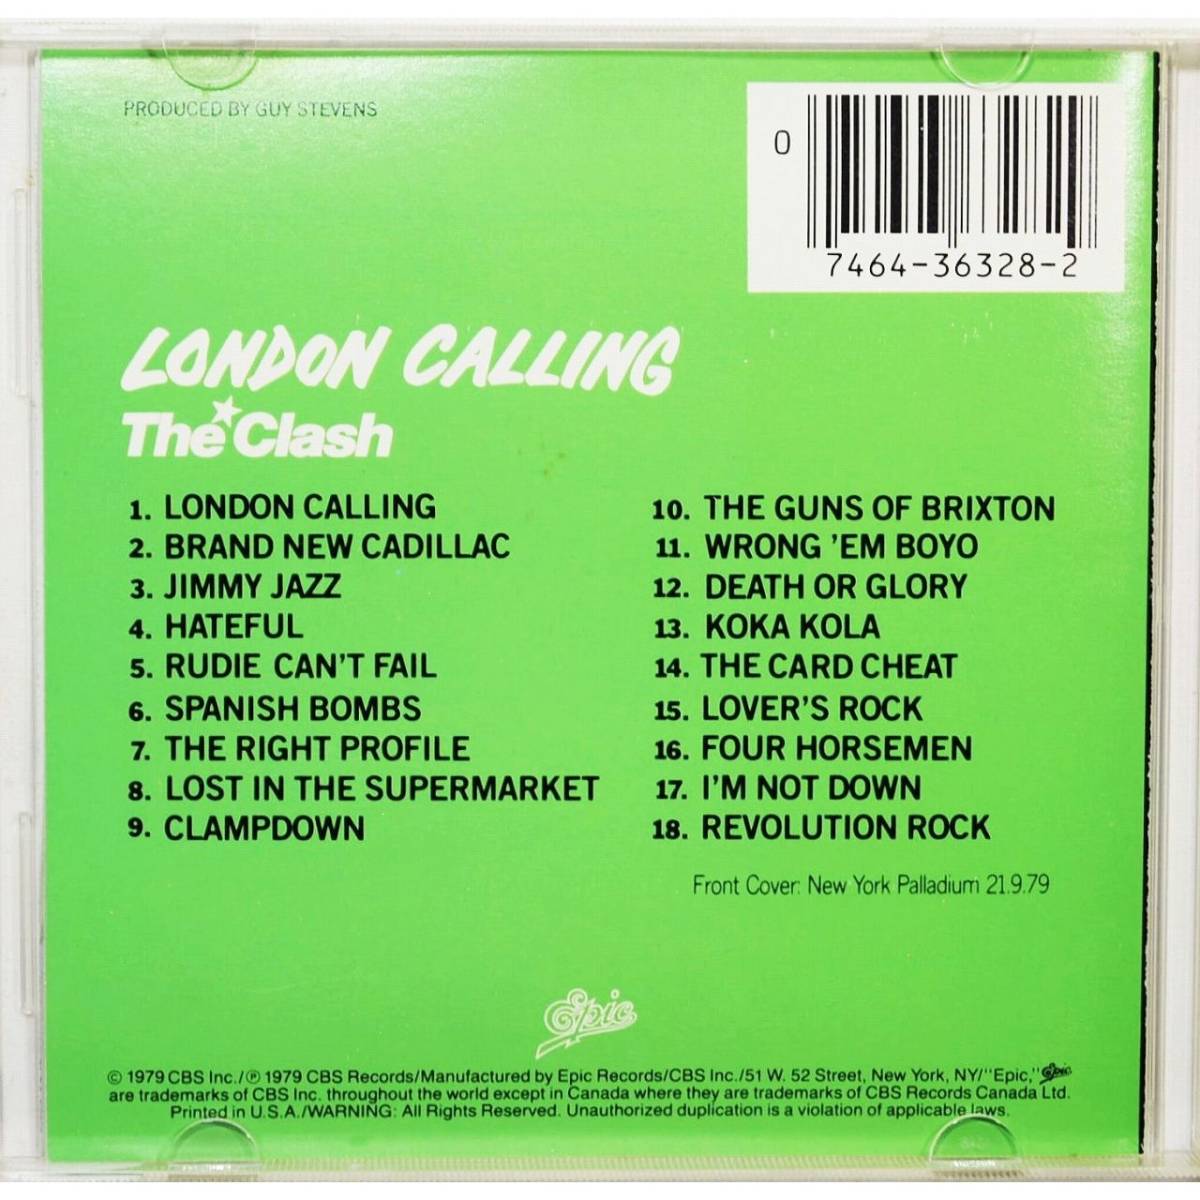 The Clash / London Calling ◇ ザ・クラッシュ / ロンドン・コーリング ◇ 1980年代最高アルバム選出 ◇_画像2